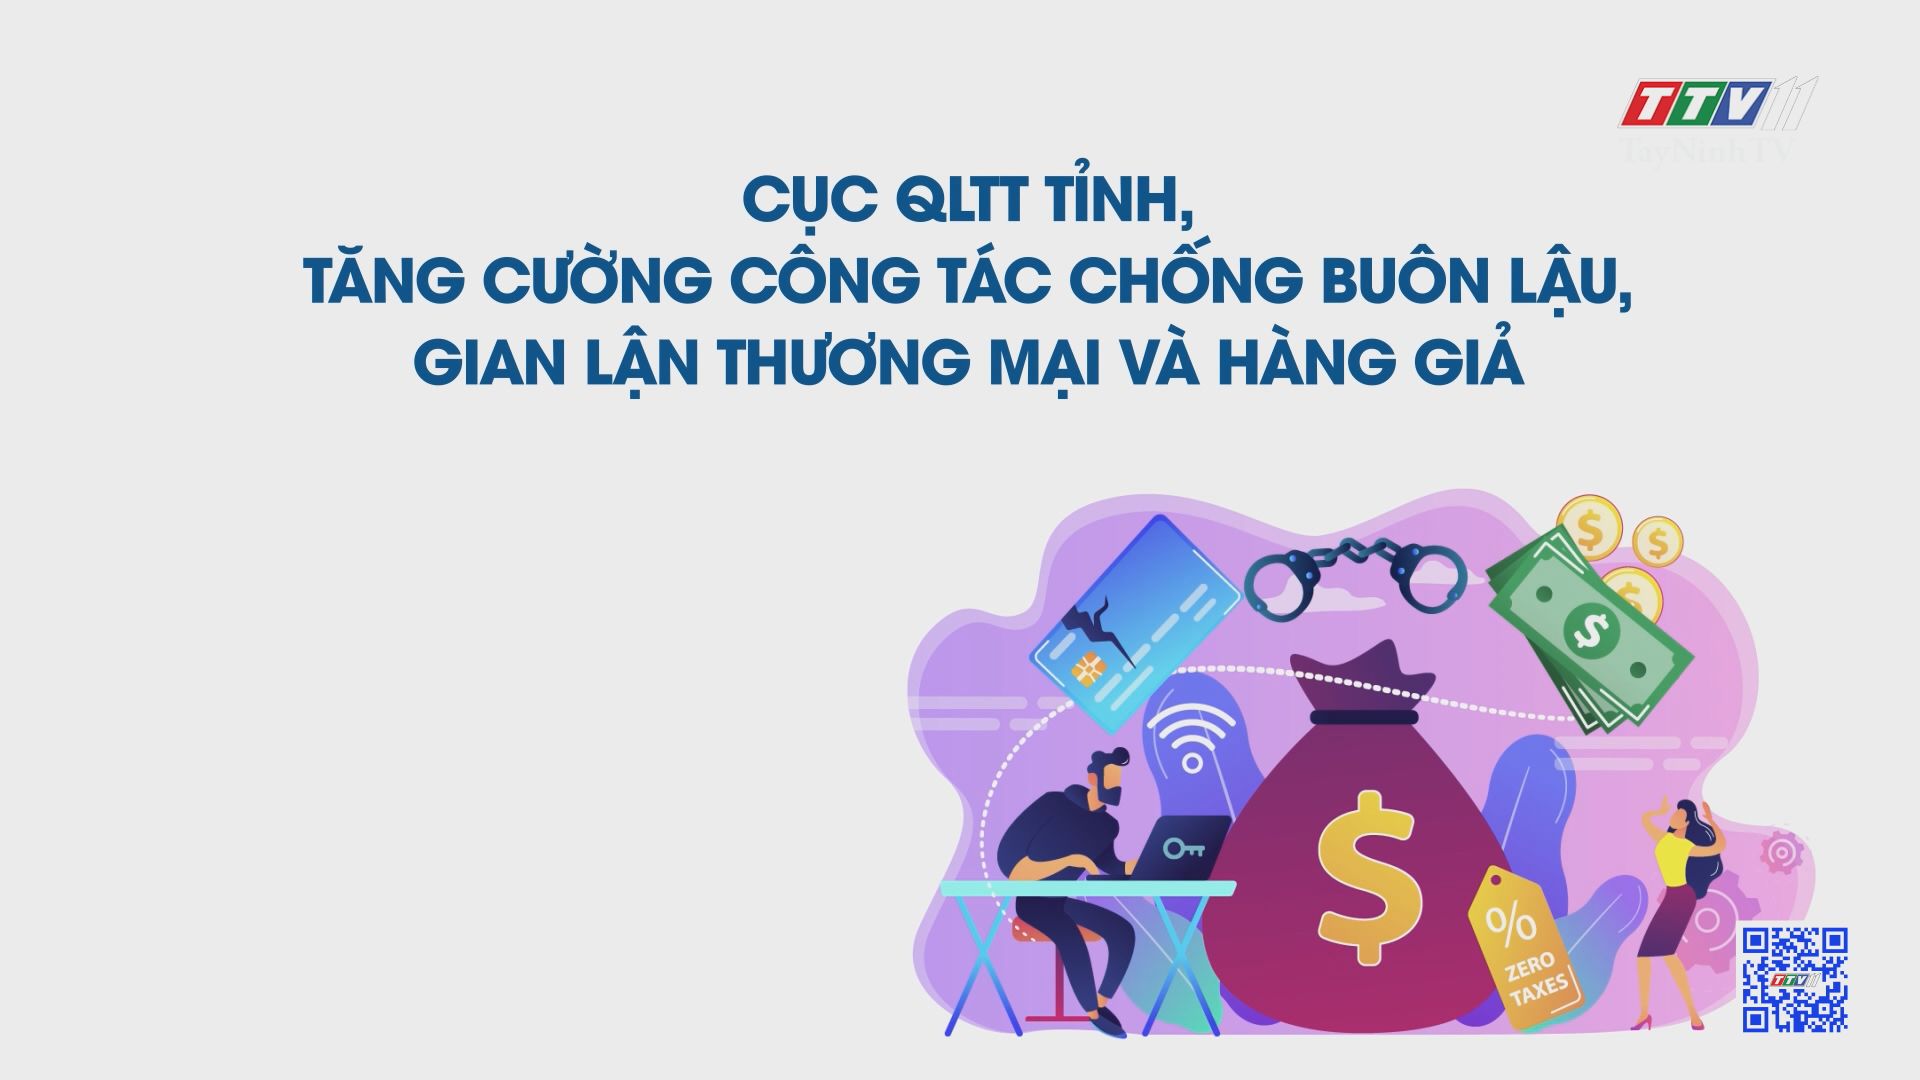 Cục QLTT tỉnh, tăng cường công tác chống buôn lậu, gian lận thương mại và hàng giả | TayNinhTV